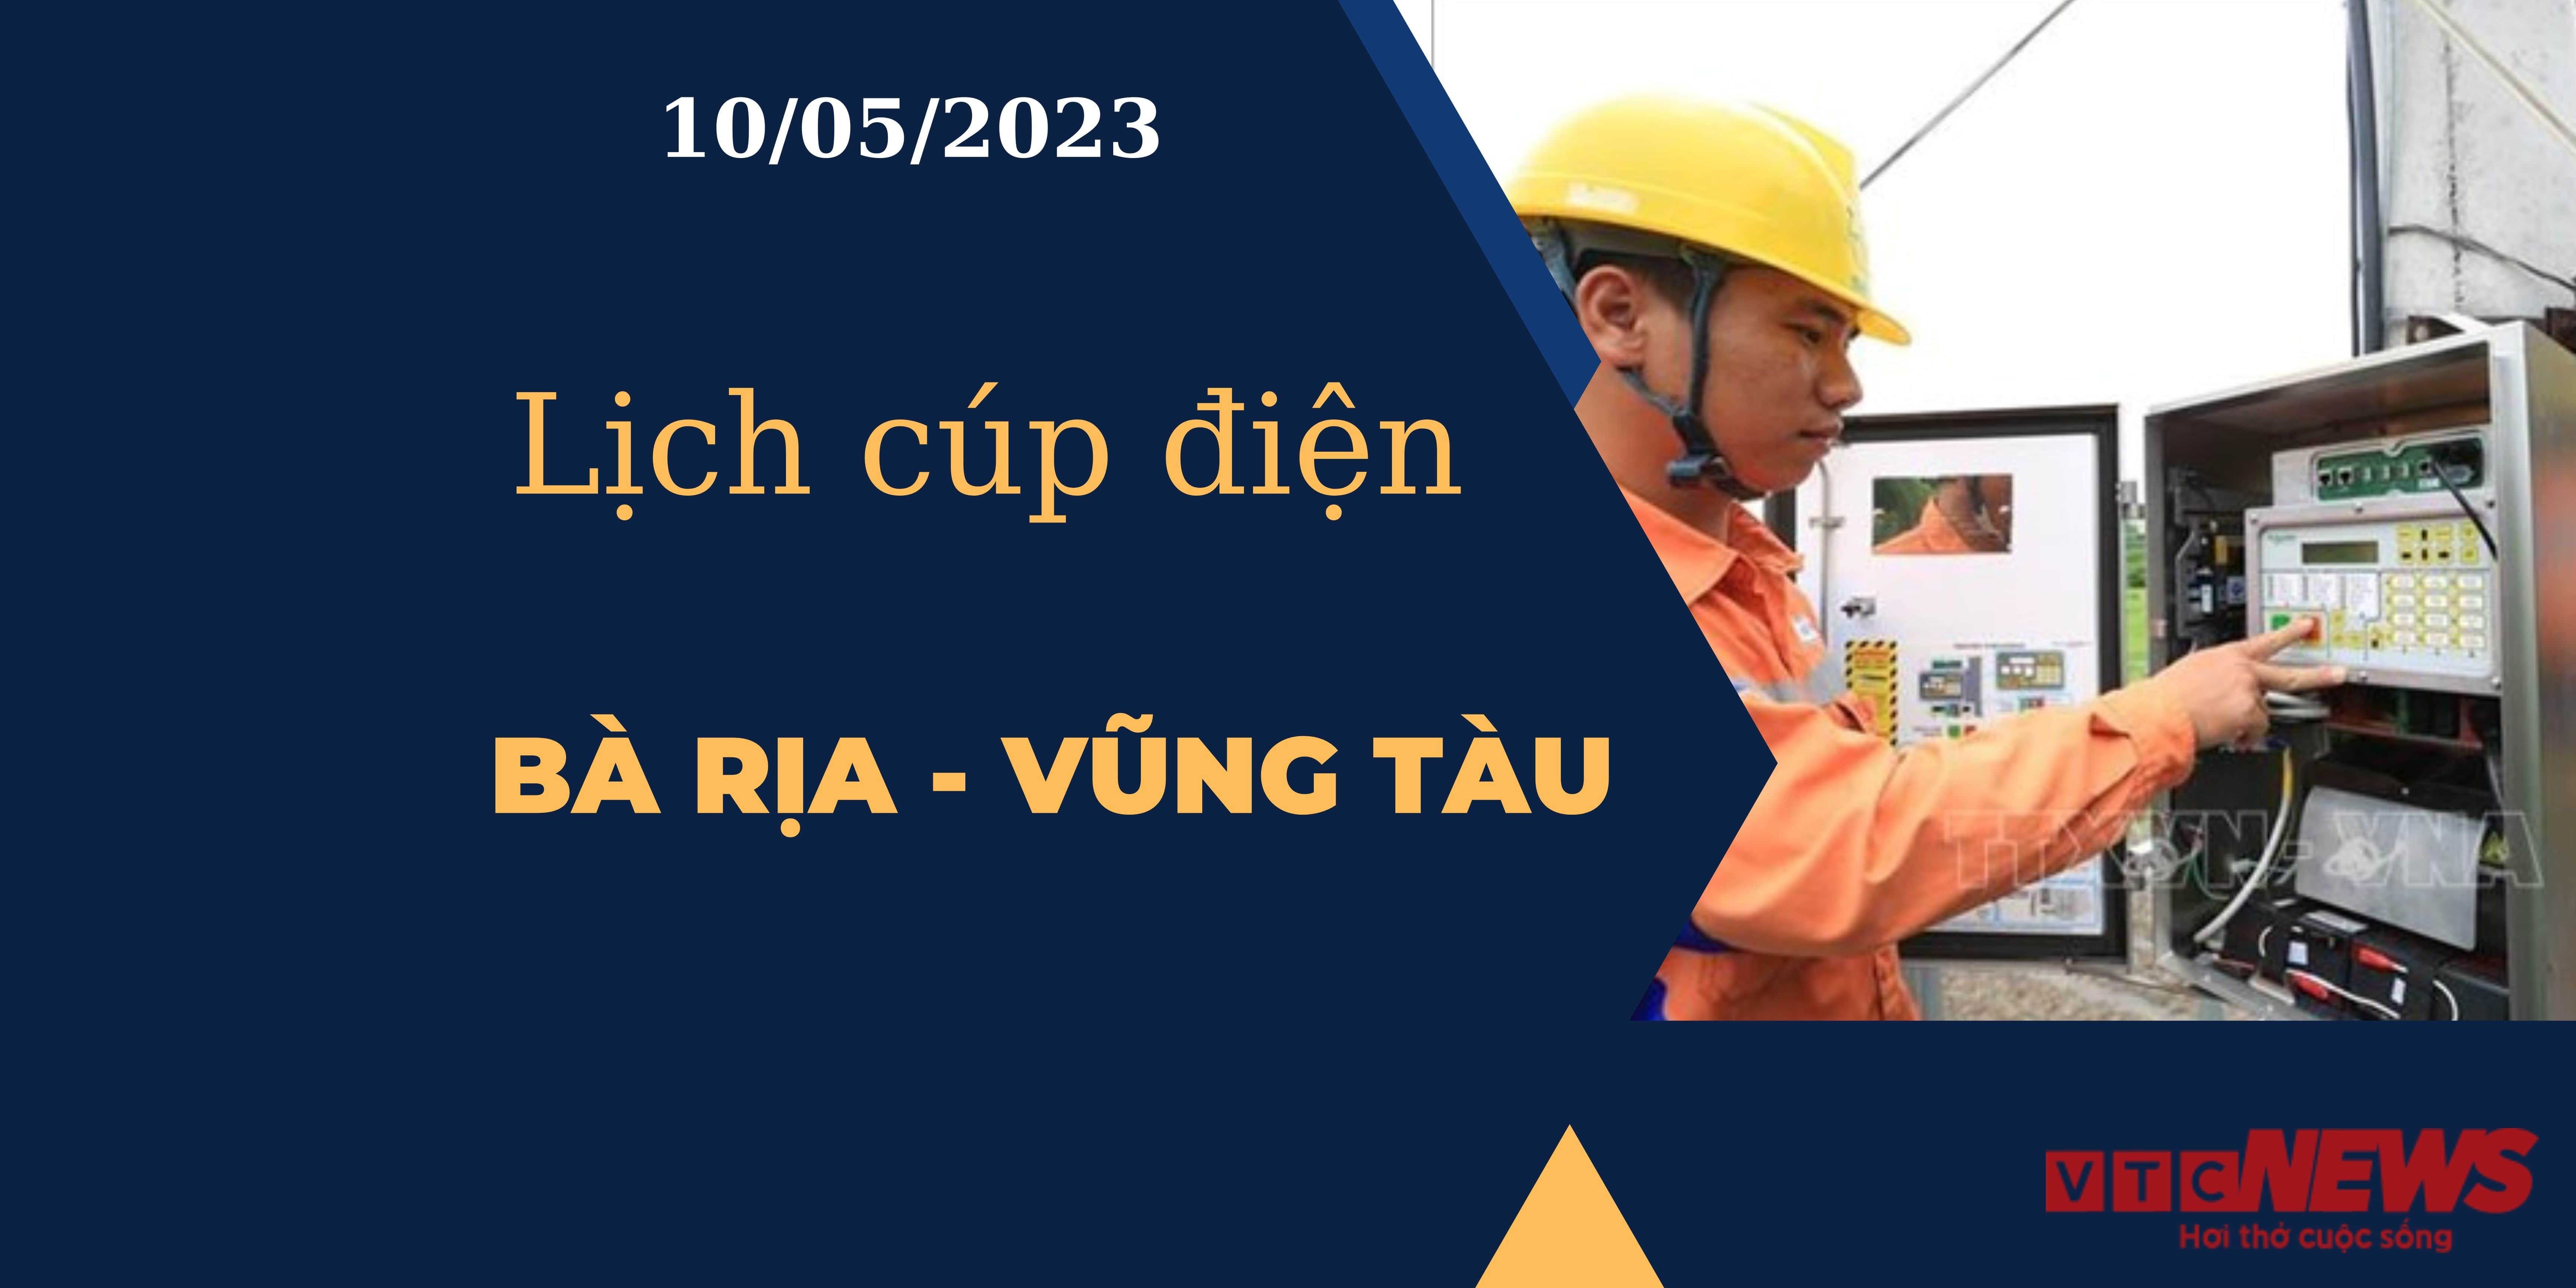 Lịch cúp điện hôm nay ngày 10/05/2023 tại Bà Rịa - Vũng Tàu - 1